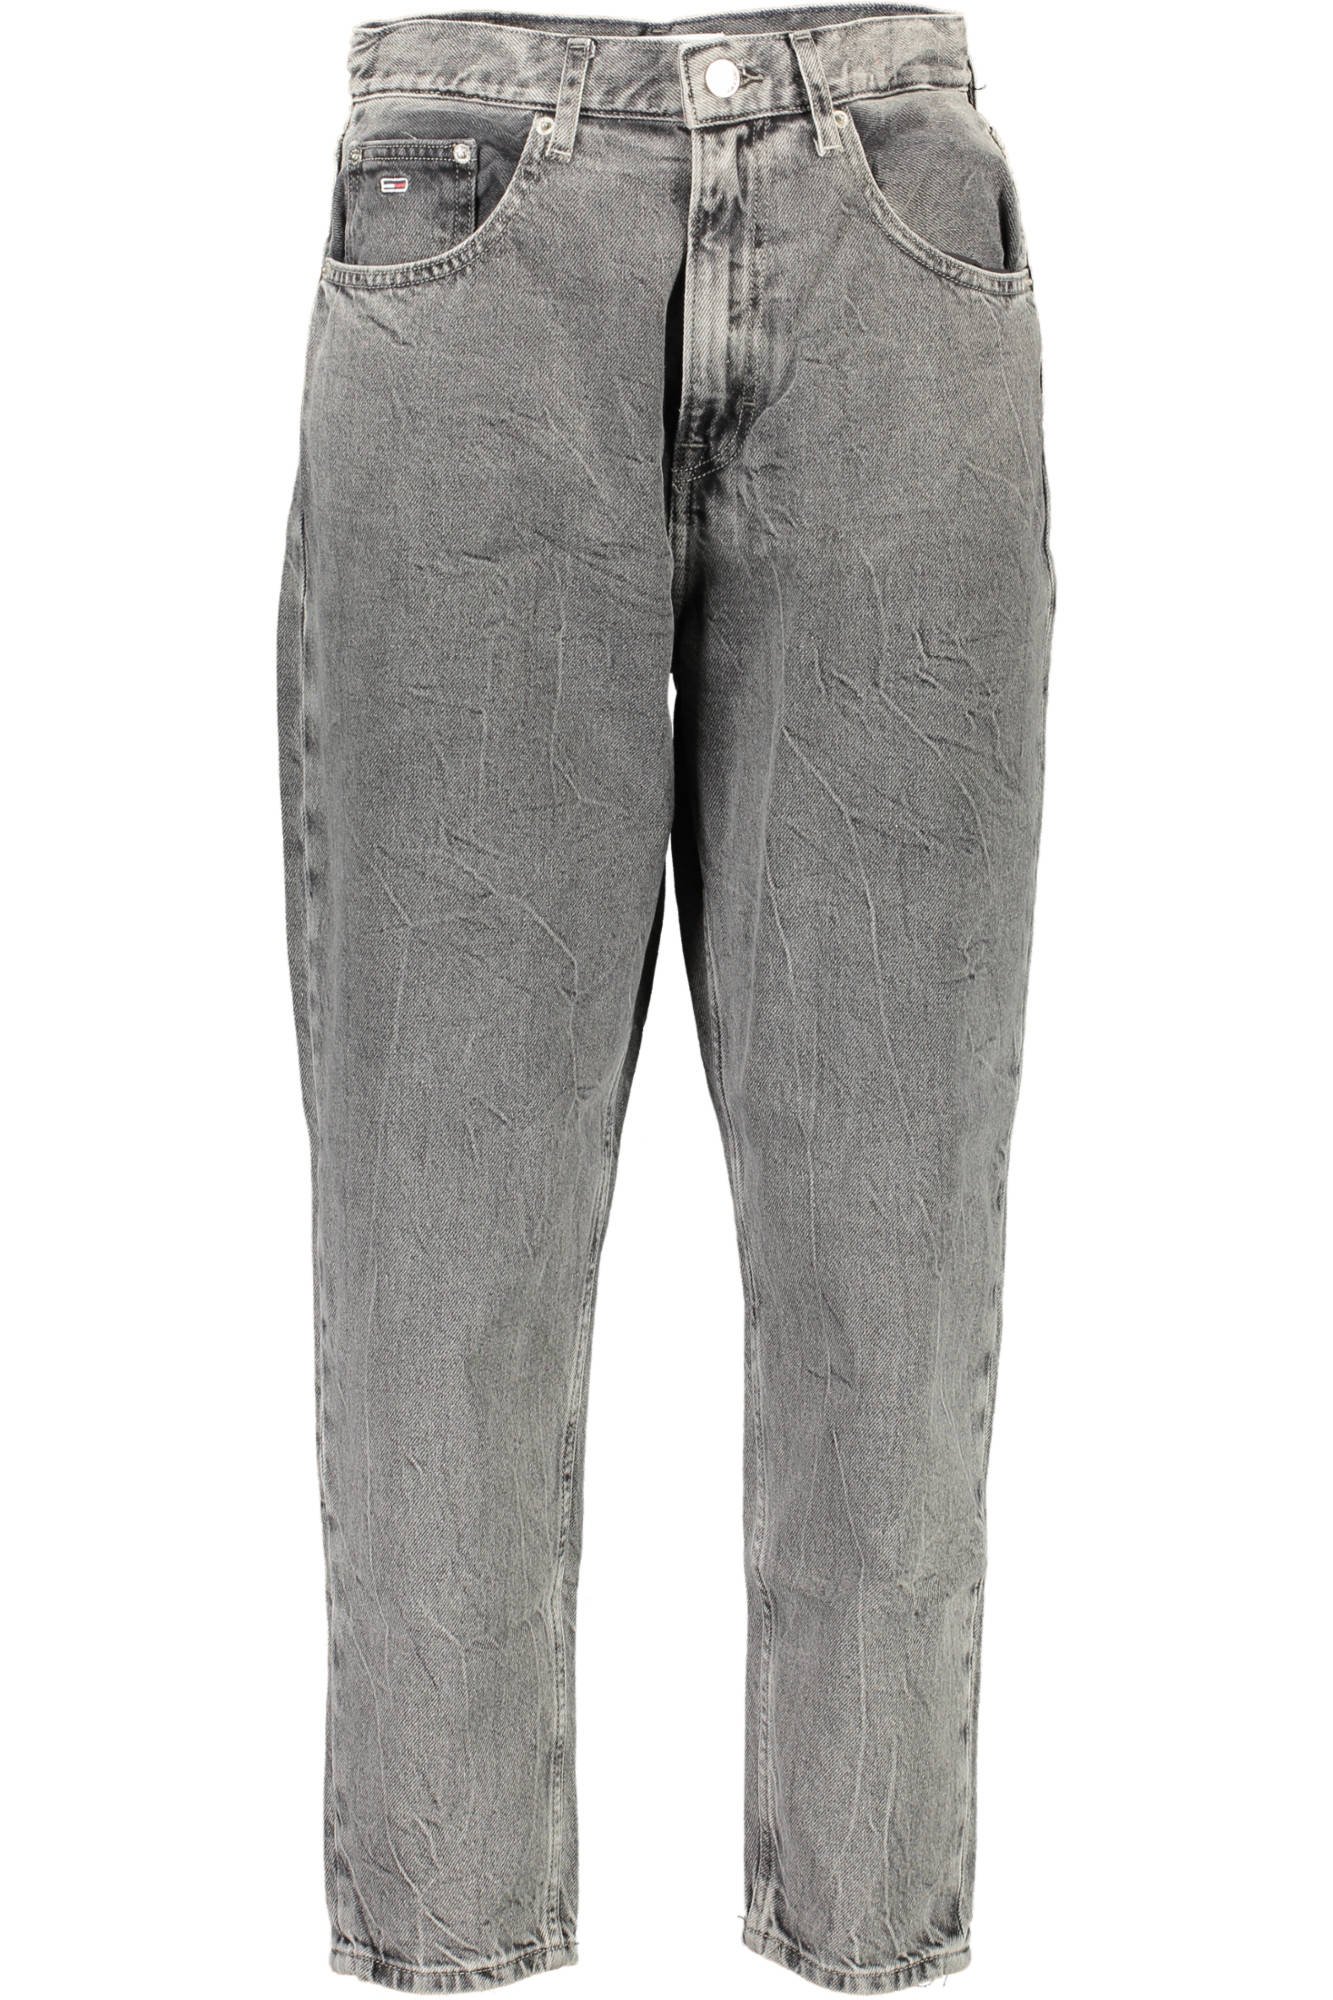 Tommy Hilfiger džinsai | Brand Outlet - drabužiai, avalynė, aksesuarai